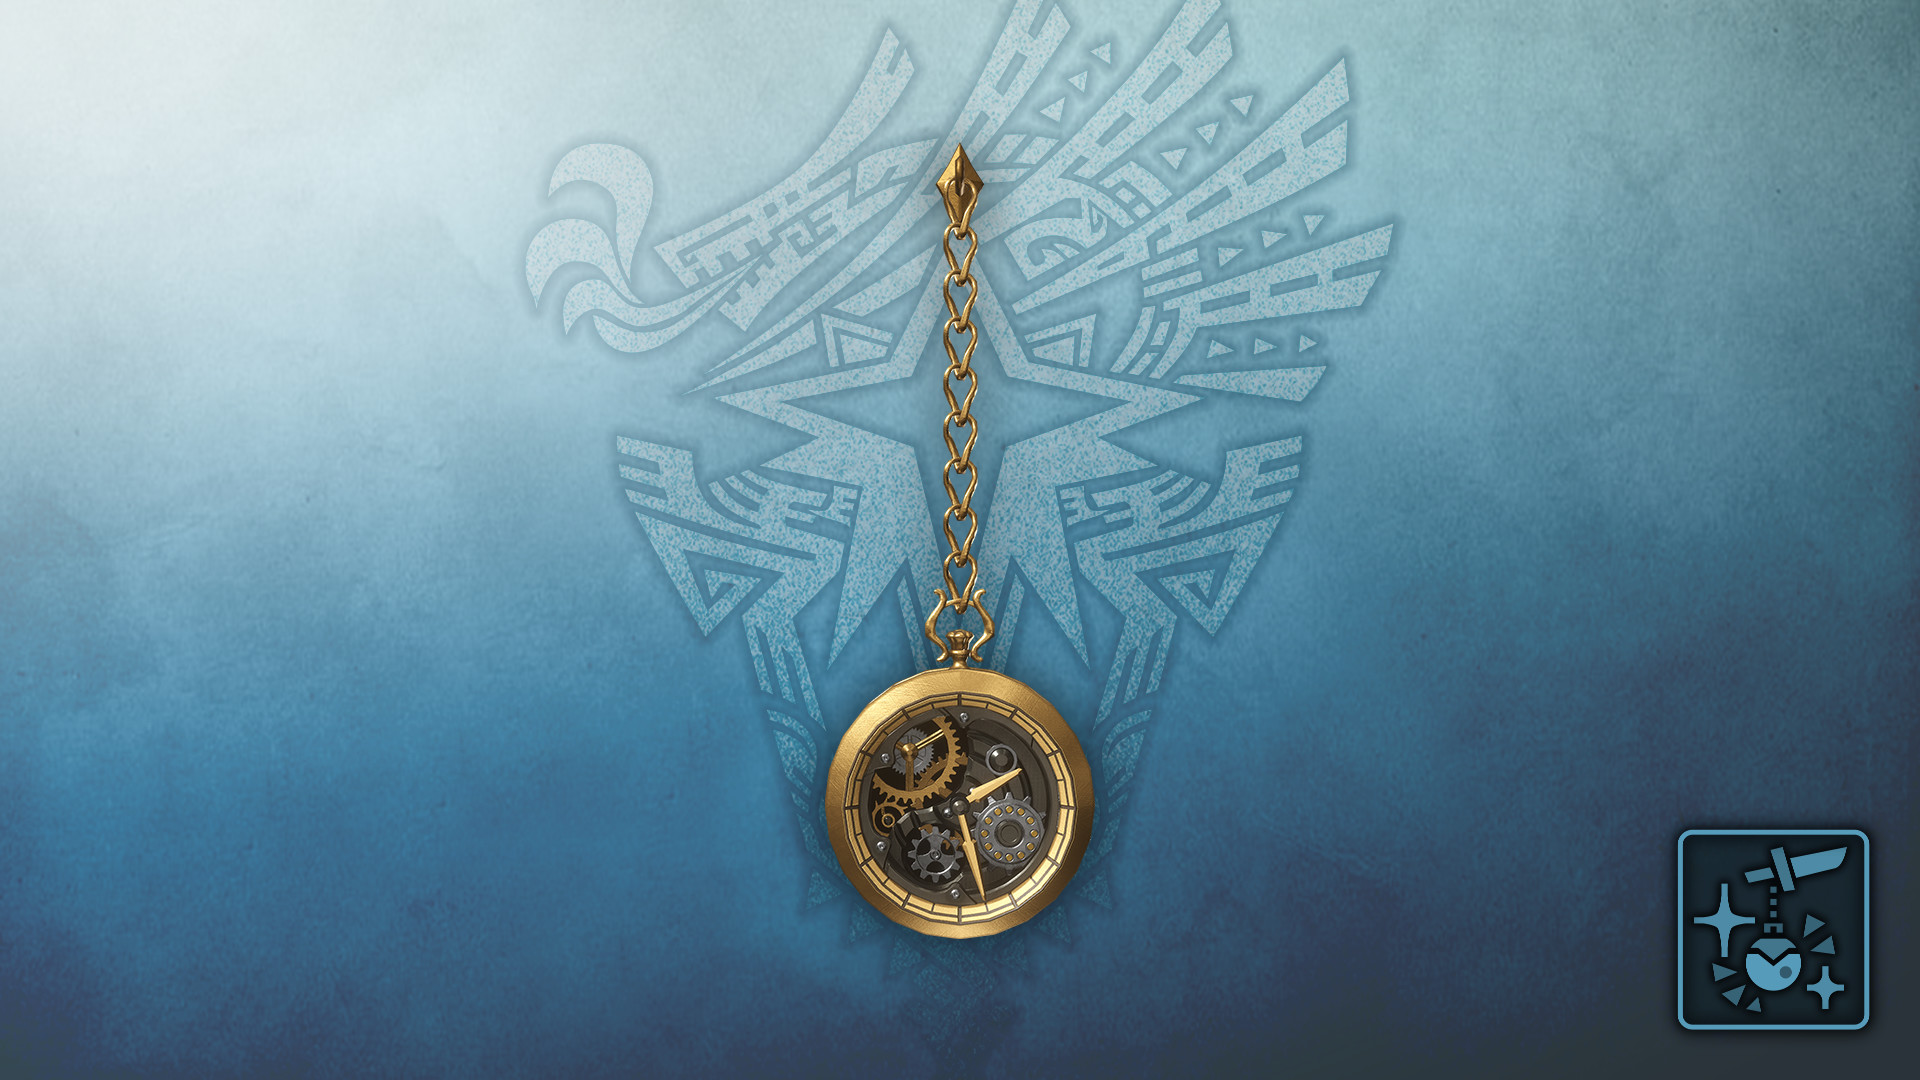 Monster Hunter World: Iceborne - Pendant: Mechanical Gold Watch Featured Screenshot #1